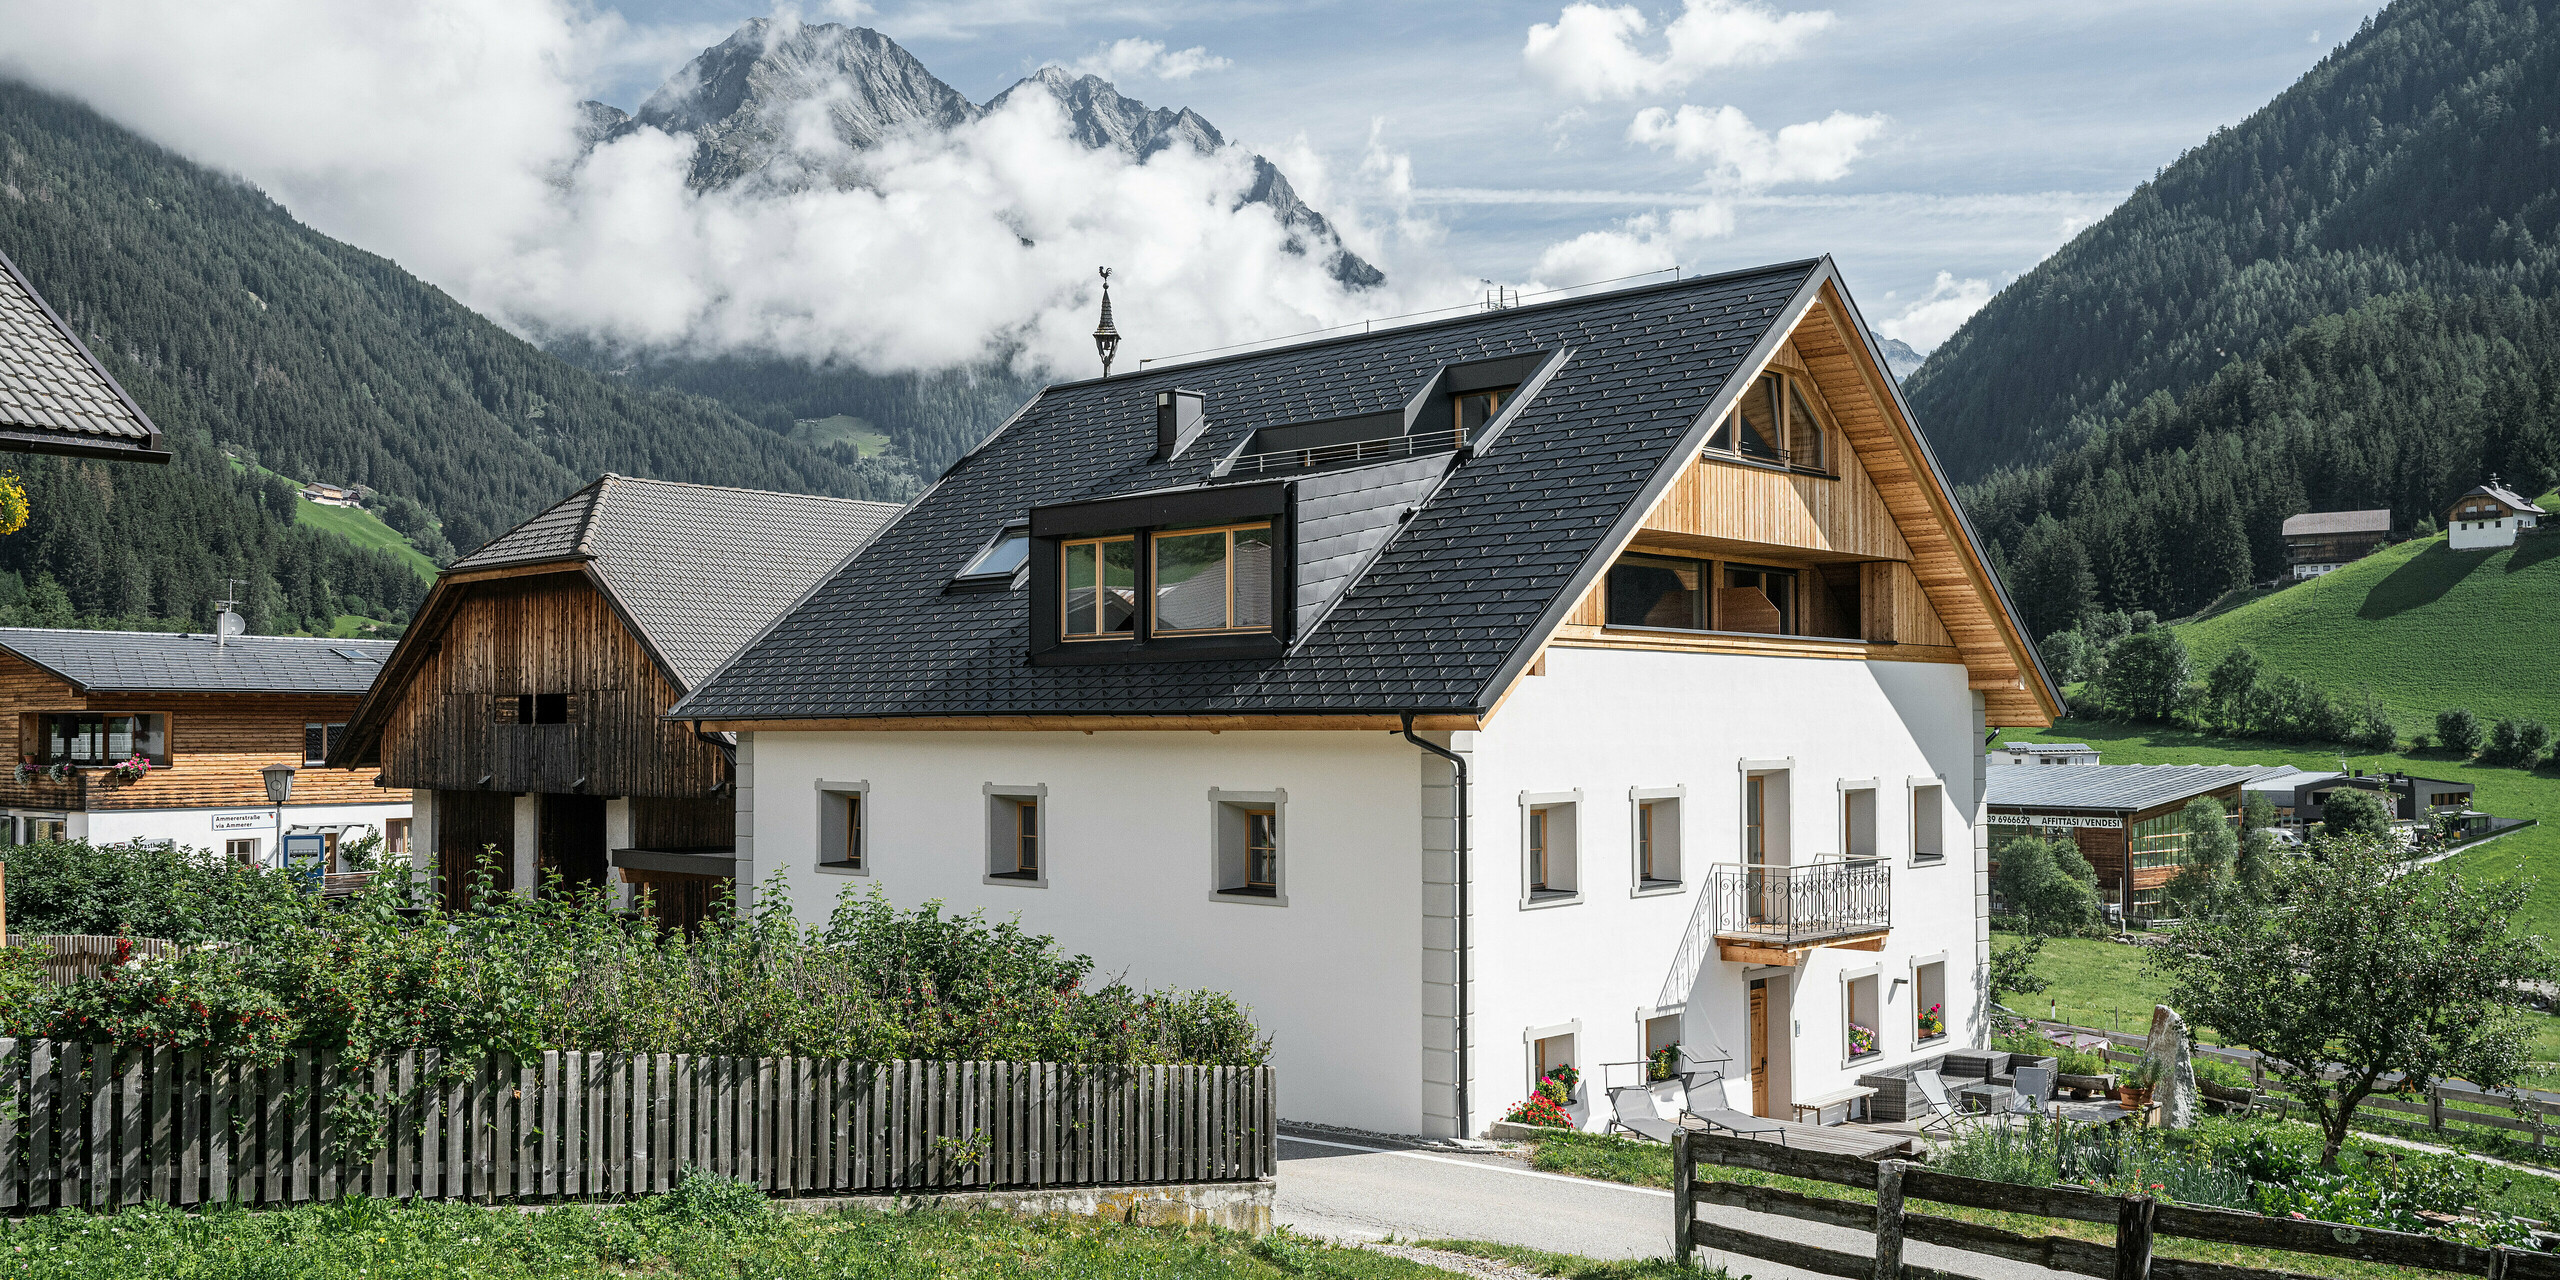 Úplný výhled na prázdninové apartmány Ausserwegerhof v idylickém údolí Antholz, Jižní Tyrolsko, pokryté střešním šindelem PREFA DS.19 v antracitové barvě. Tradiční stavba ladí s moderními prvky a nabízí malebný výhled na majestátní horské pozadí, tajemně obklopené mraky. Ausserwegerhof uprostřed obrázku je obklopen klasickými farmami a zelenými loukami.